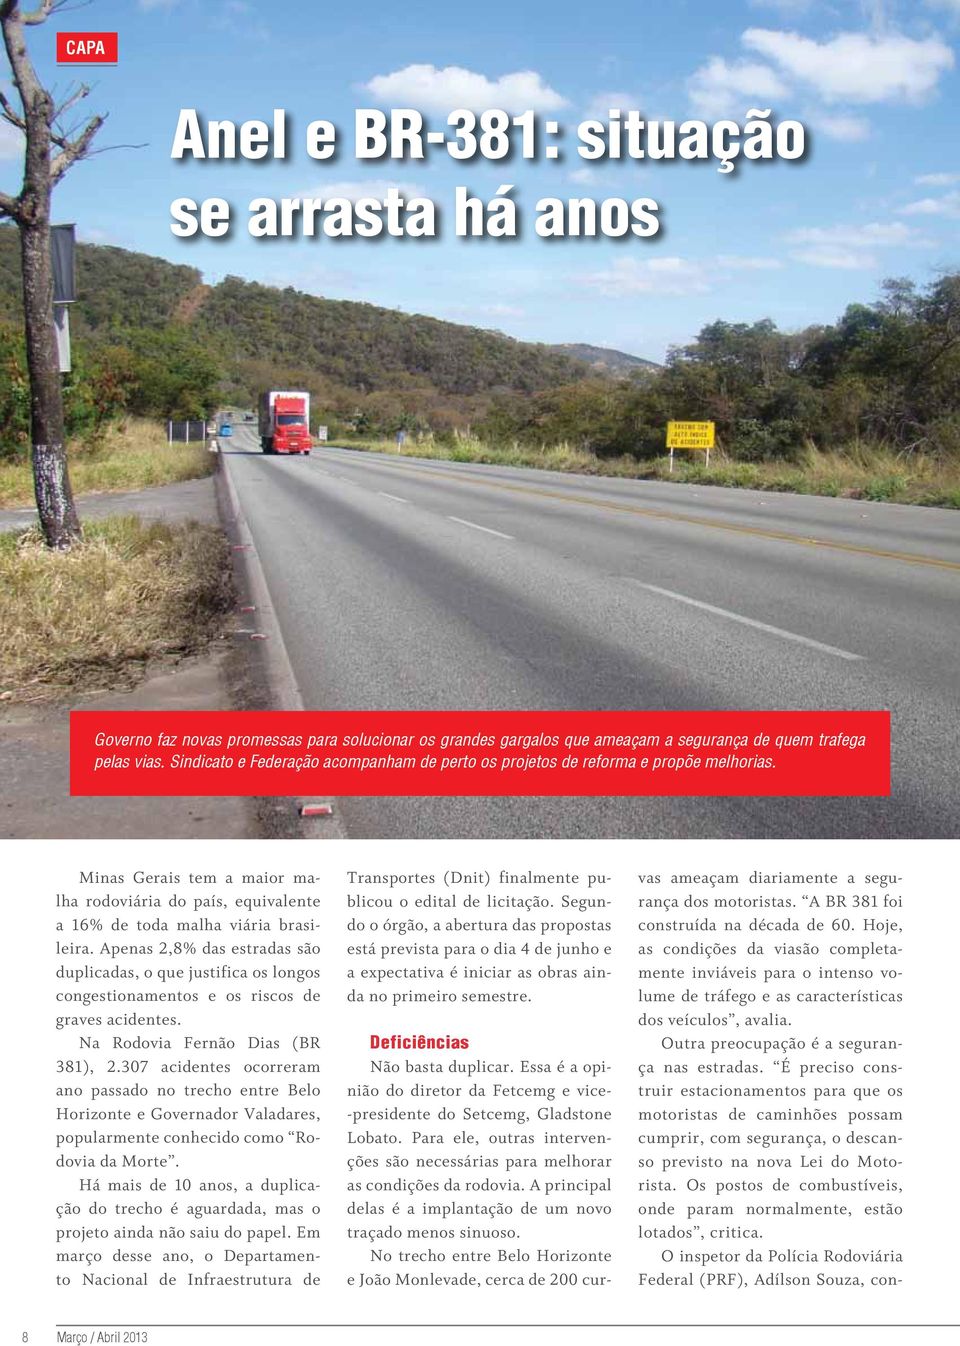 Apenas 2,8% das estradas são duplicadas, o que justifica os longos congestionamentos e os riscos de graves acidentes. Na Rodovia Fernão Dias (BR 381), 2.